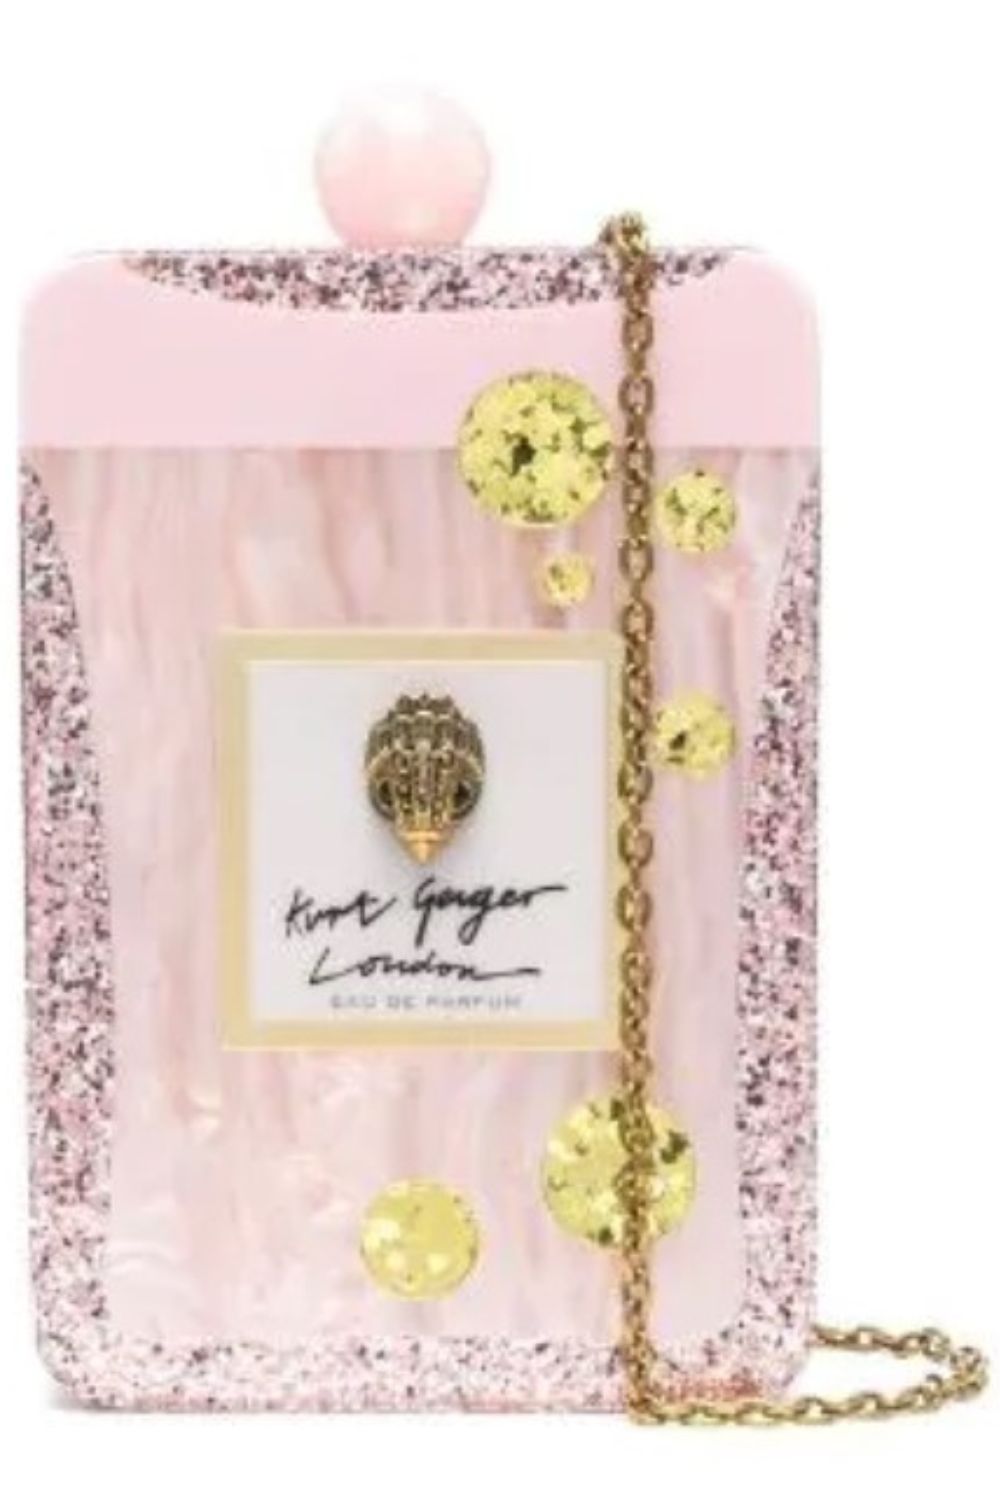 Kurt Geiger Women's Perfume Clutch Kiss Lock Pink Glitter Acrylic Shoulder Bag